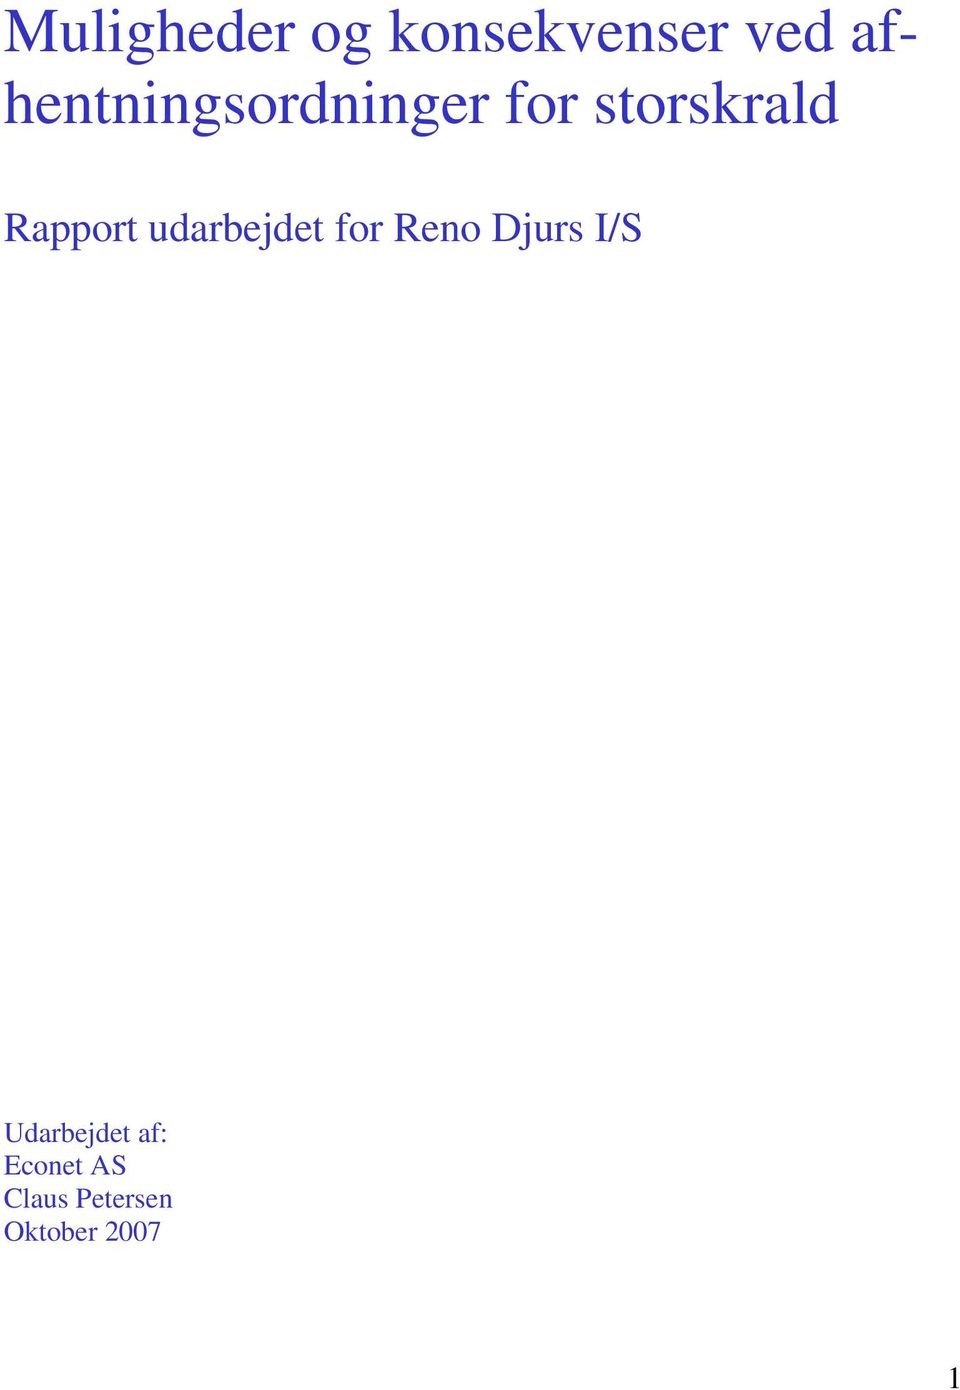 Rapport udarbejdet for Reno Djurs I/S